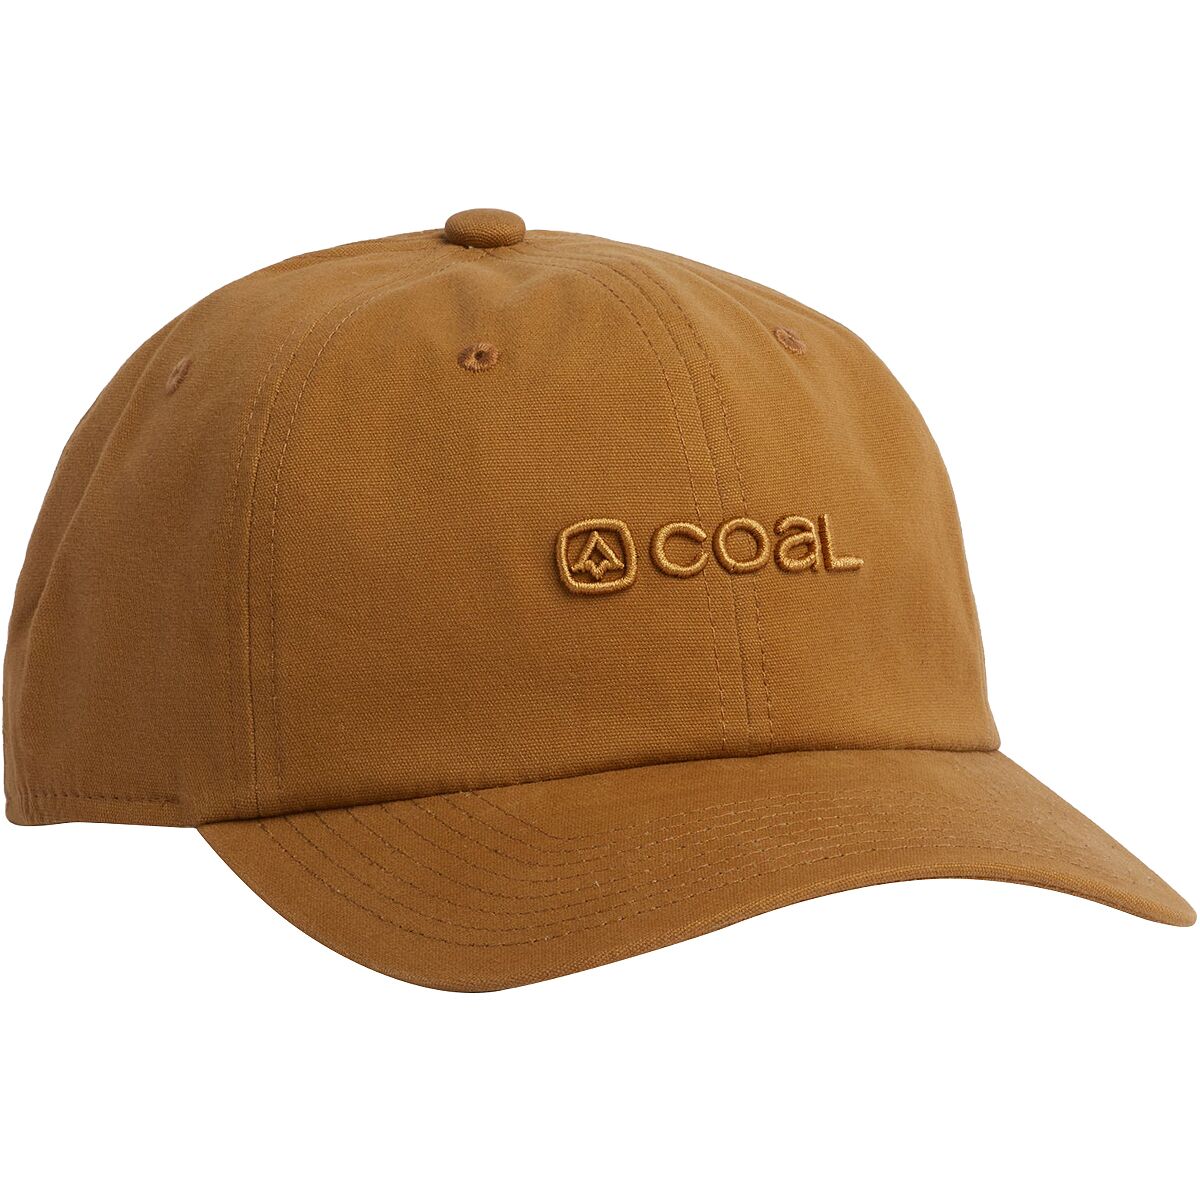 Coal Headwear Encore Hat